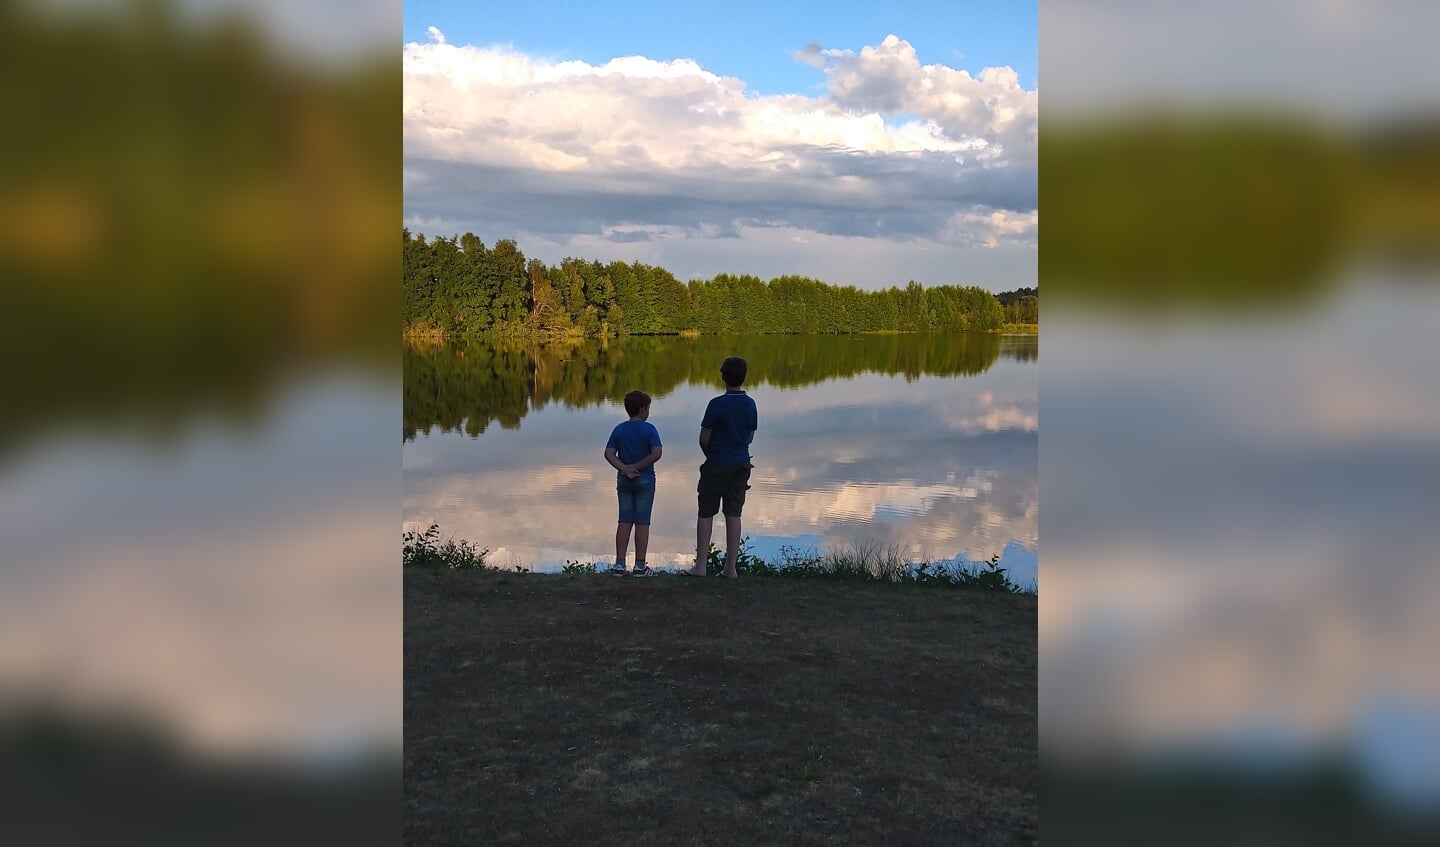 De foto is gemaakt op do. 20 augustus op Roompot Vakantiepark in Arcen. 
Op de foto mijn twee jongens, Lucas en Jasper. 
Prachtige wolkenlucht met de weerkaatsing in het water en twee kanjers. 
Een sereen plaatje. In NL genieten van mooie natuur.